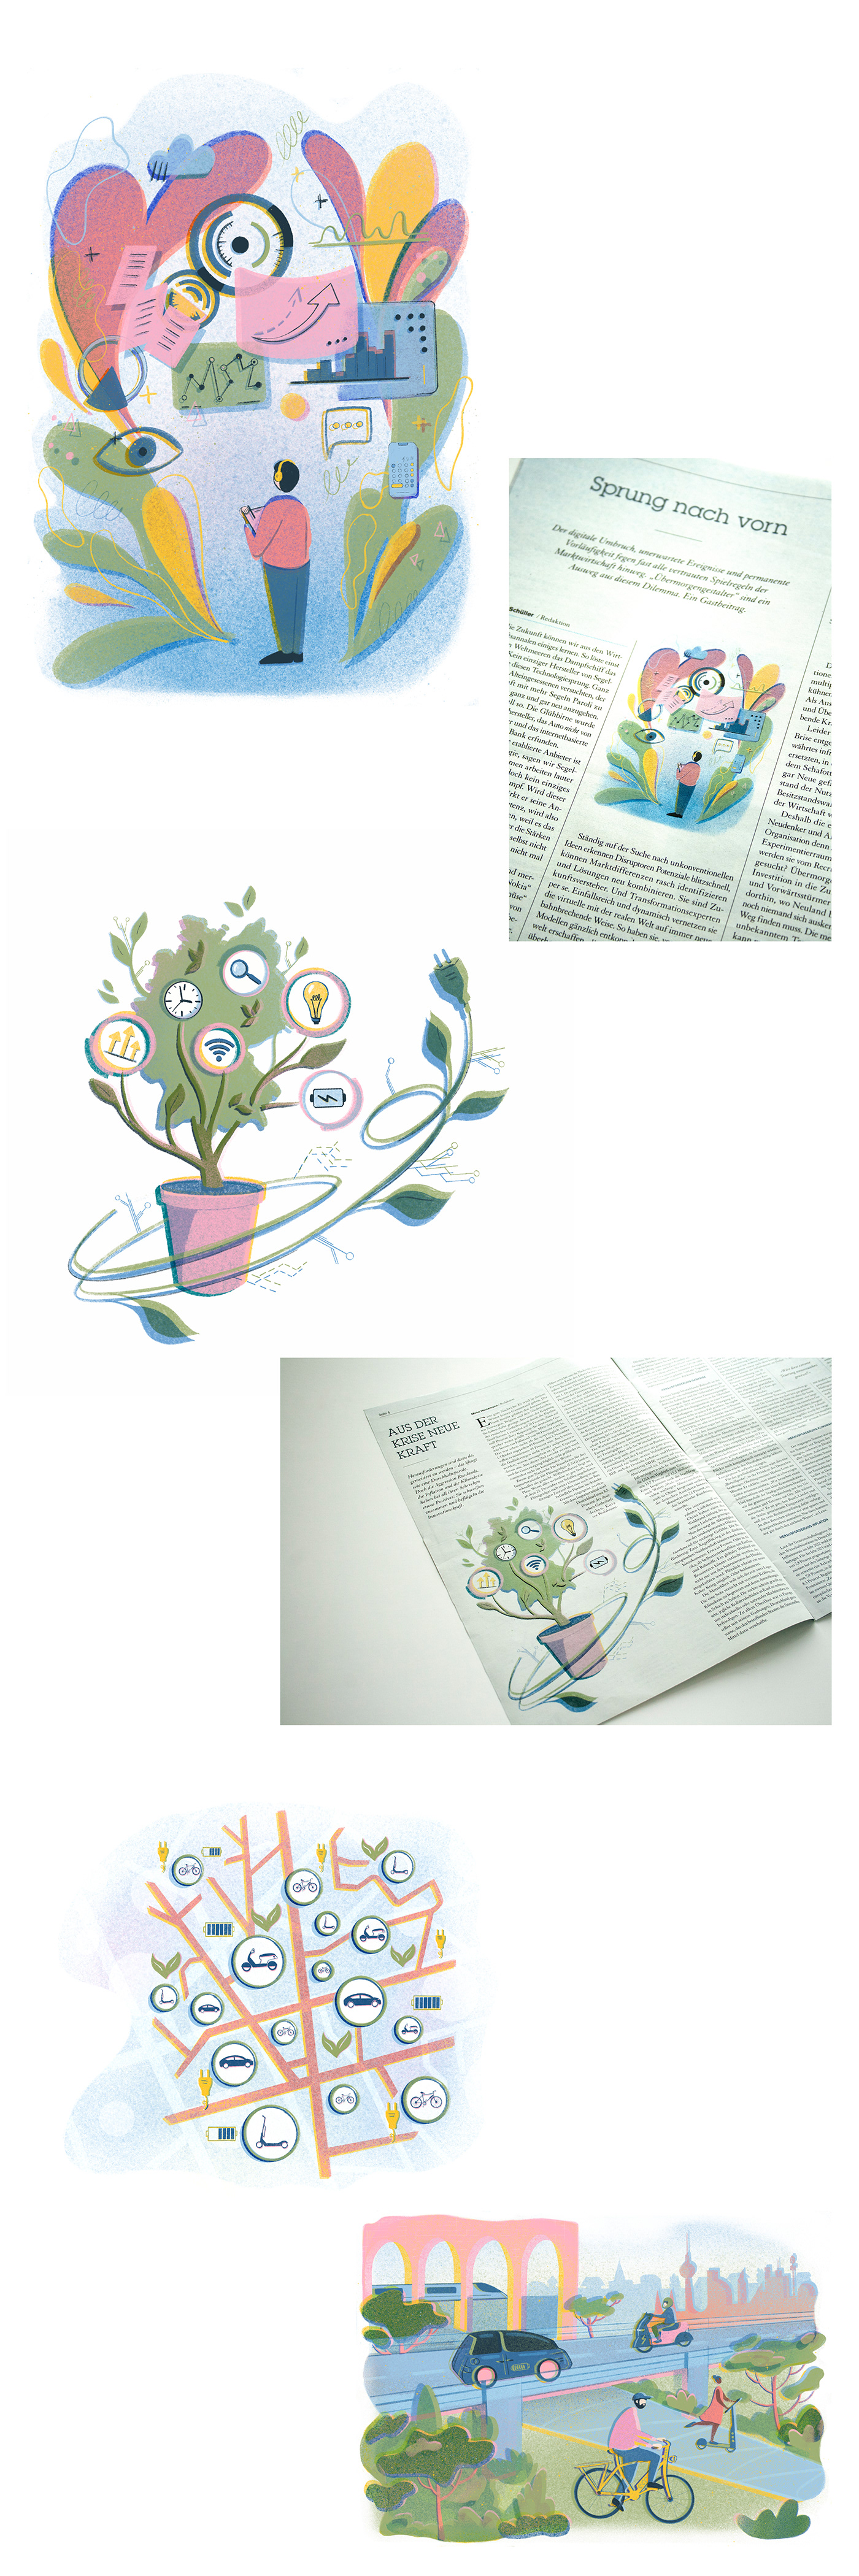 design Digital Art  digital illustration editorial Editorial Illustration ILLUSTRATION  magazine Procreate